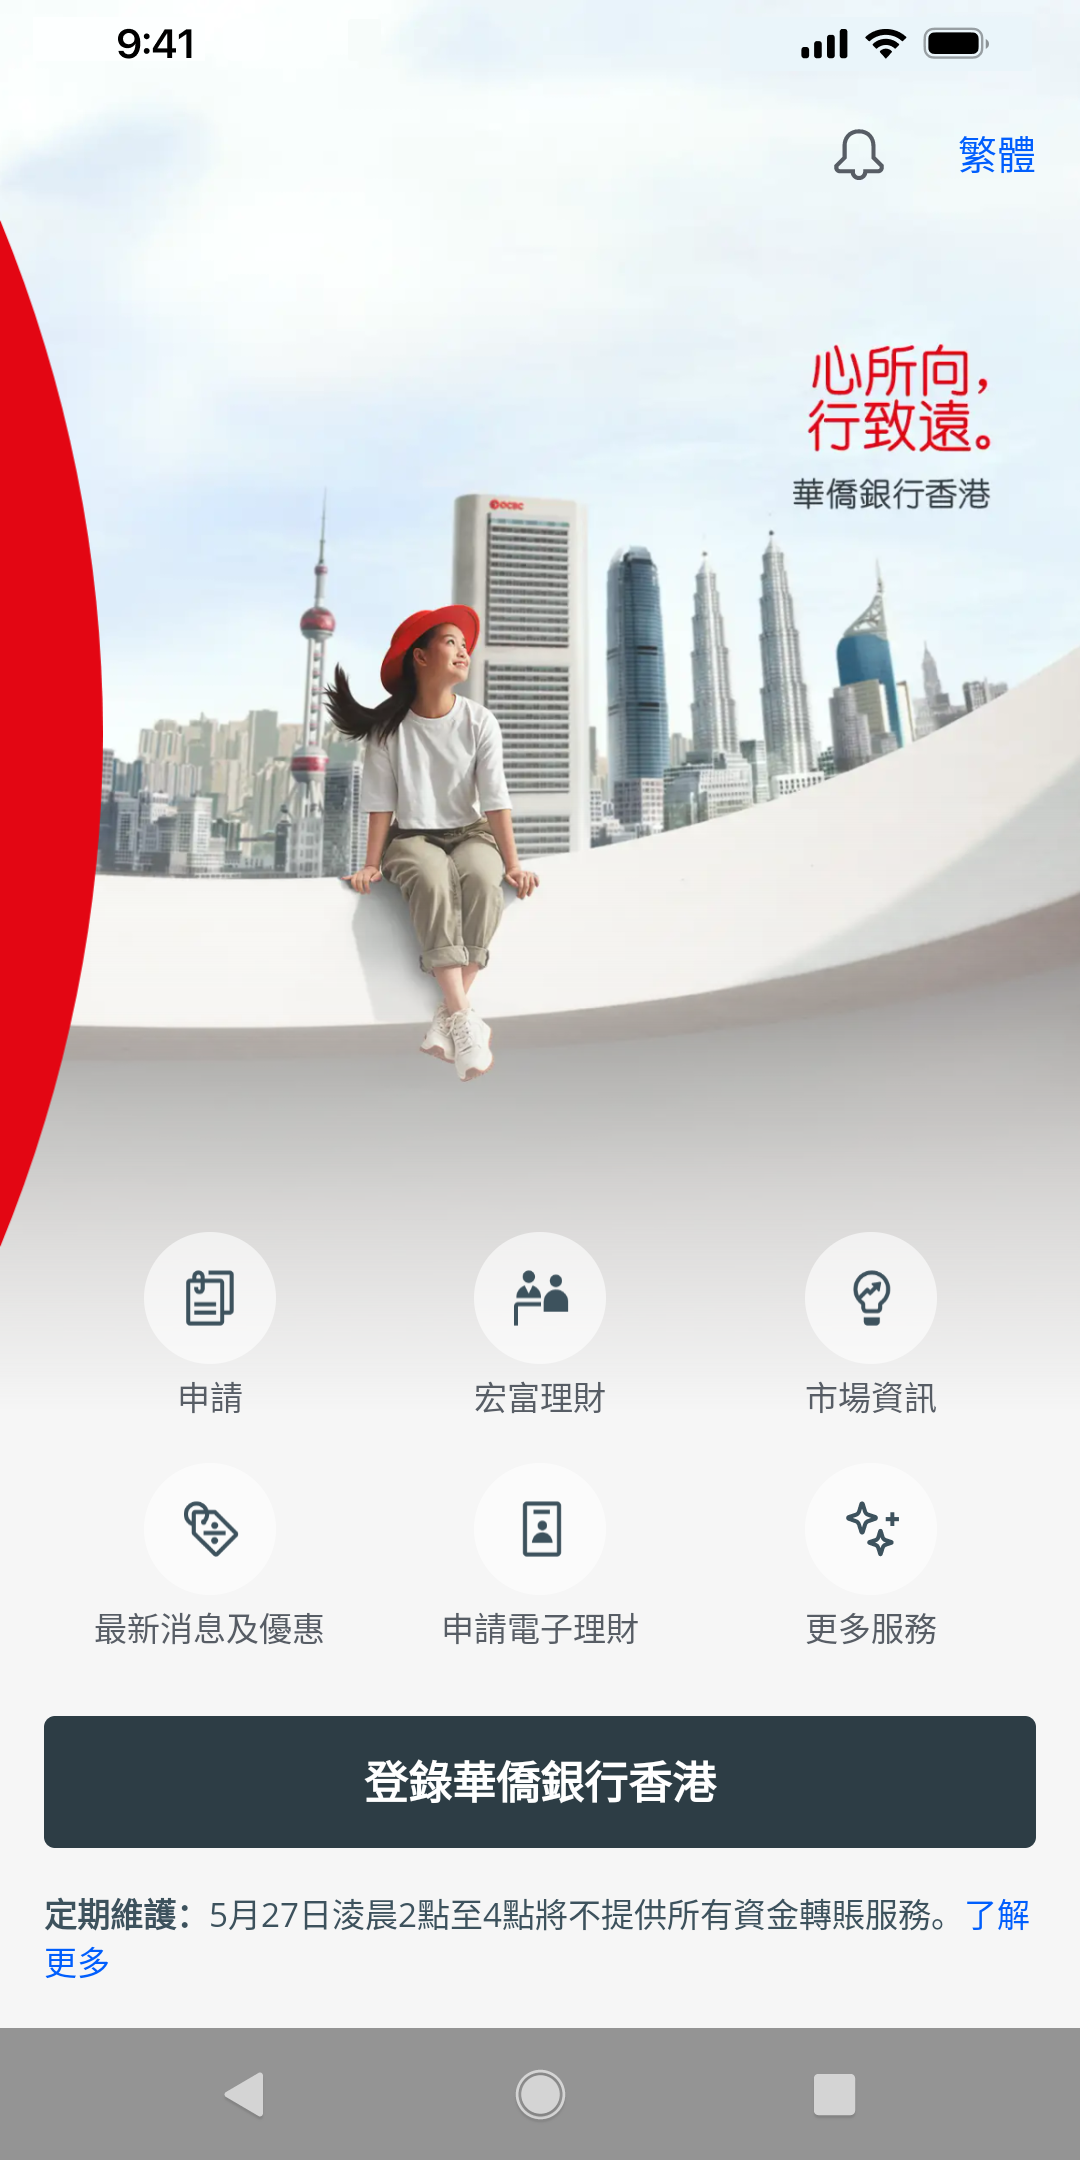 下載華僑銀行(香港) 手機應用程式，於流動理財主頁按「登入」